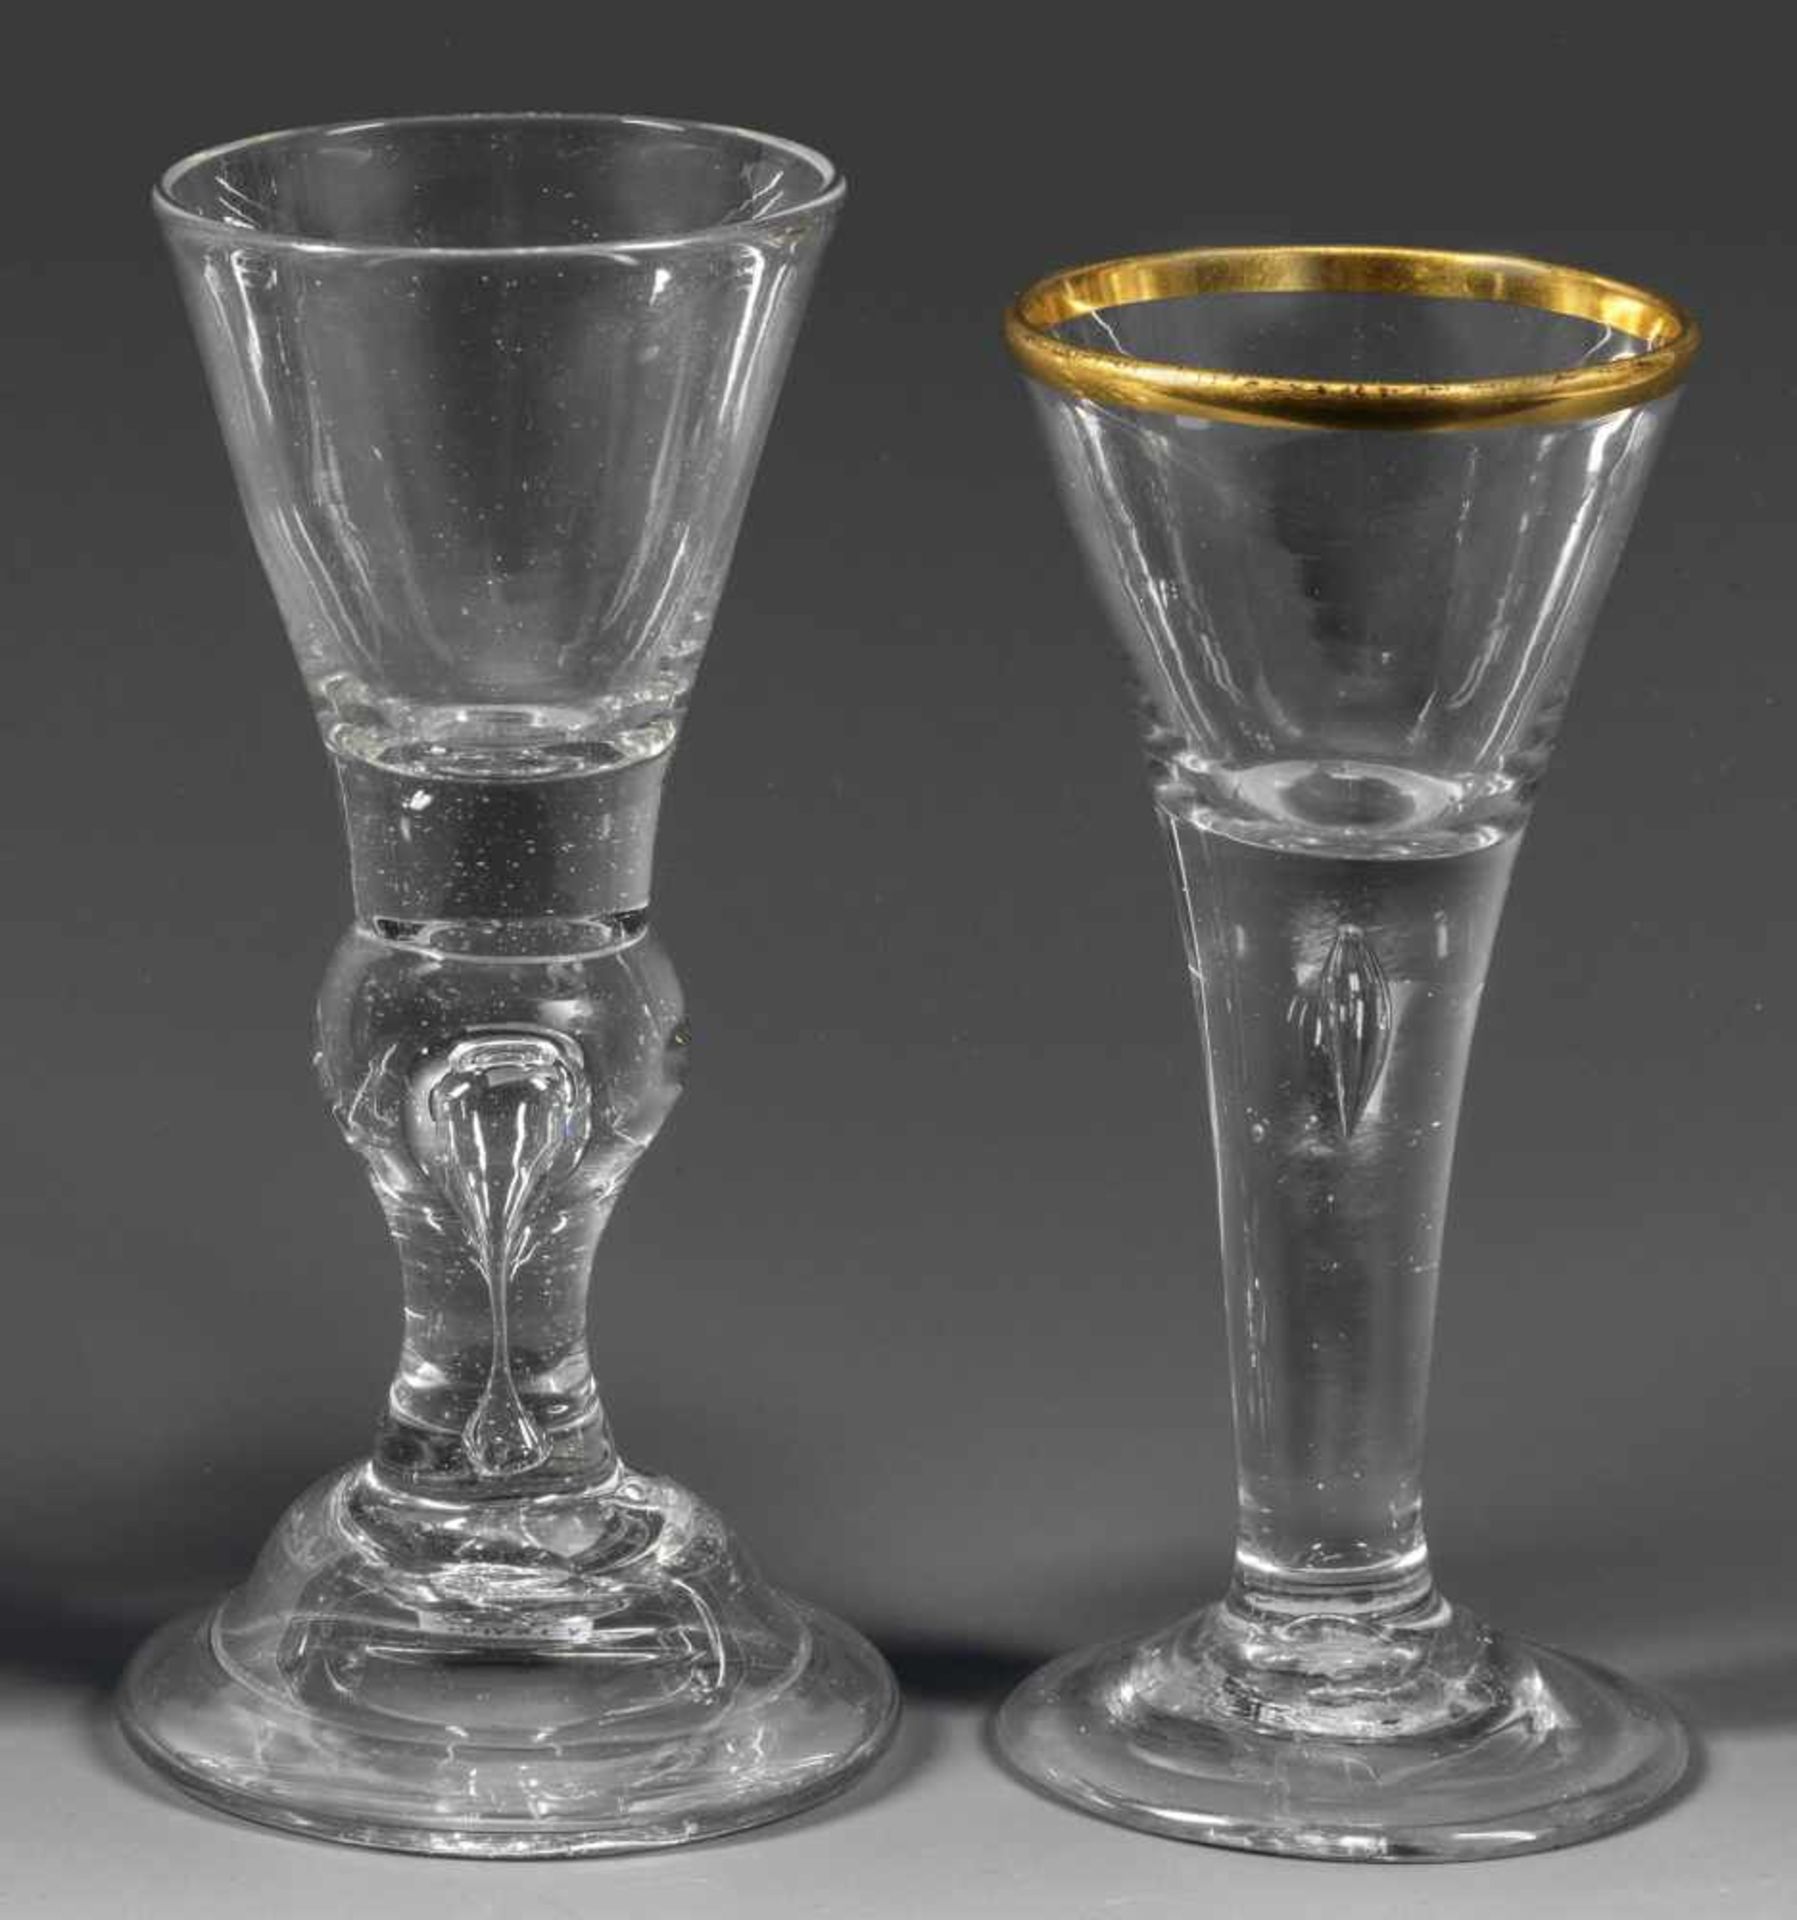 Zwei Lauensteiner PokaleFarbloses Glas. Ein Pokal in Spitzkelchform mit eingestochener Luftblase